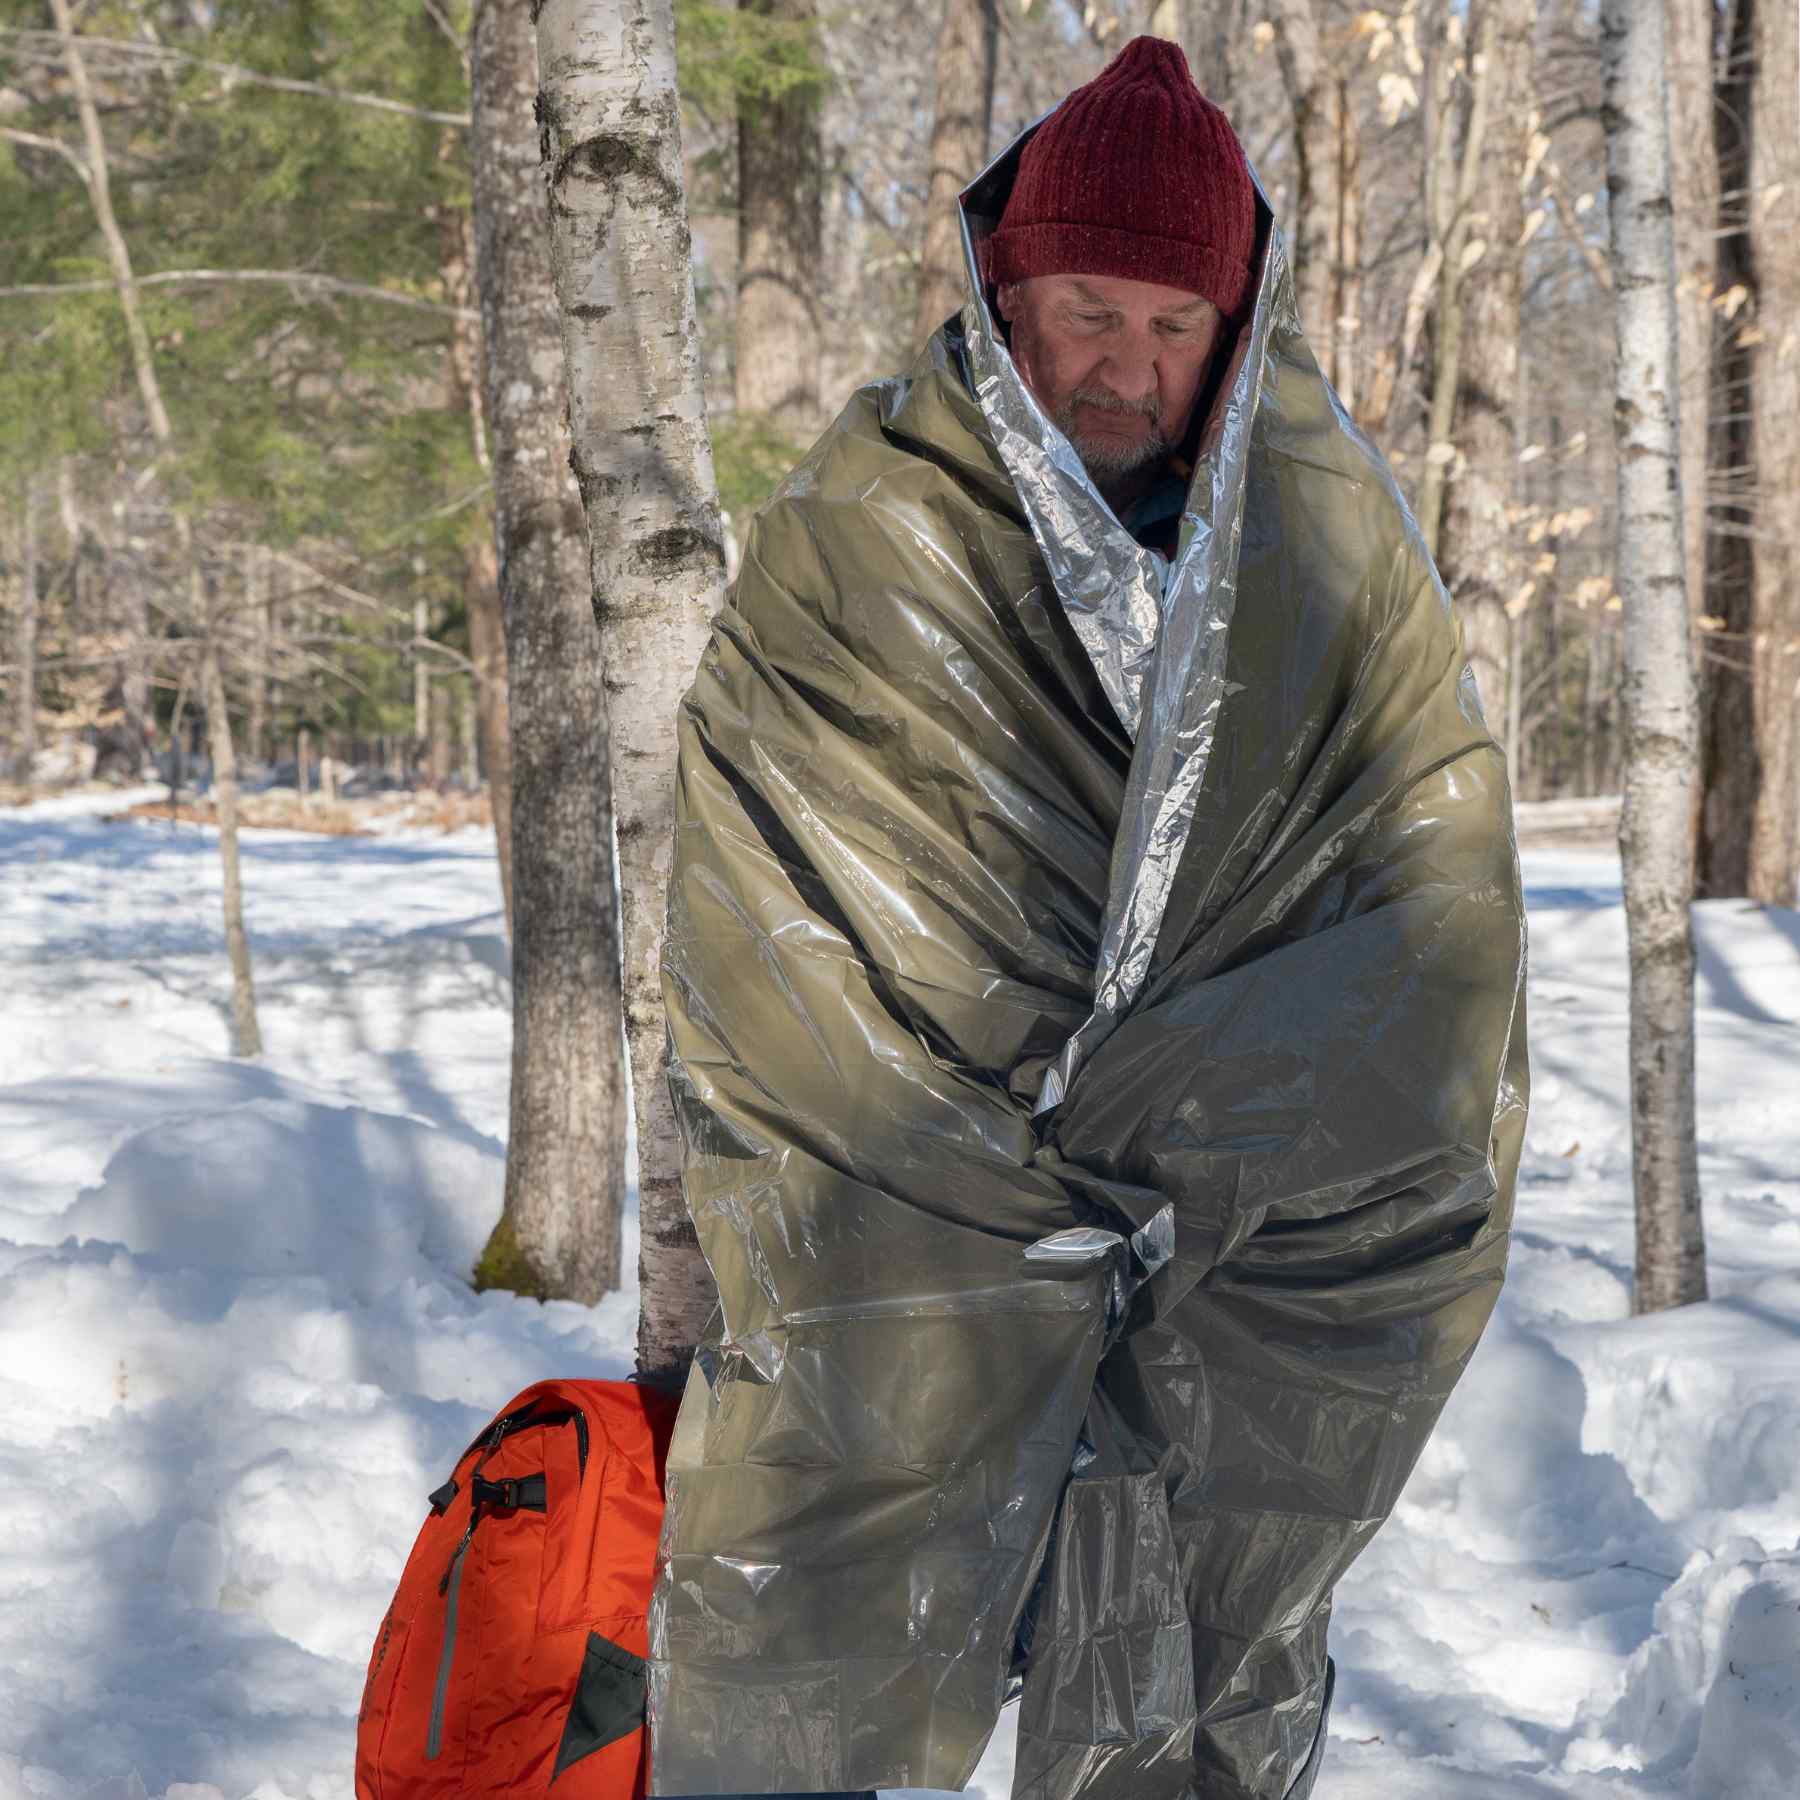 Heavy Duty Emergency Blanket man wrapped in blanket in snowy background